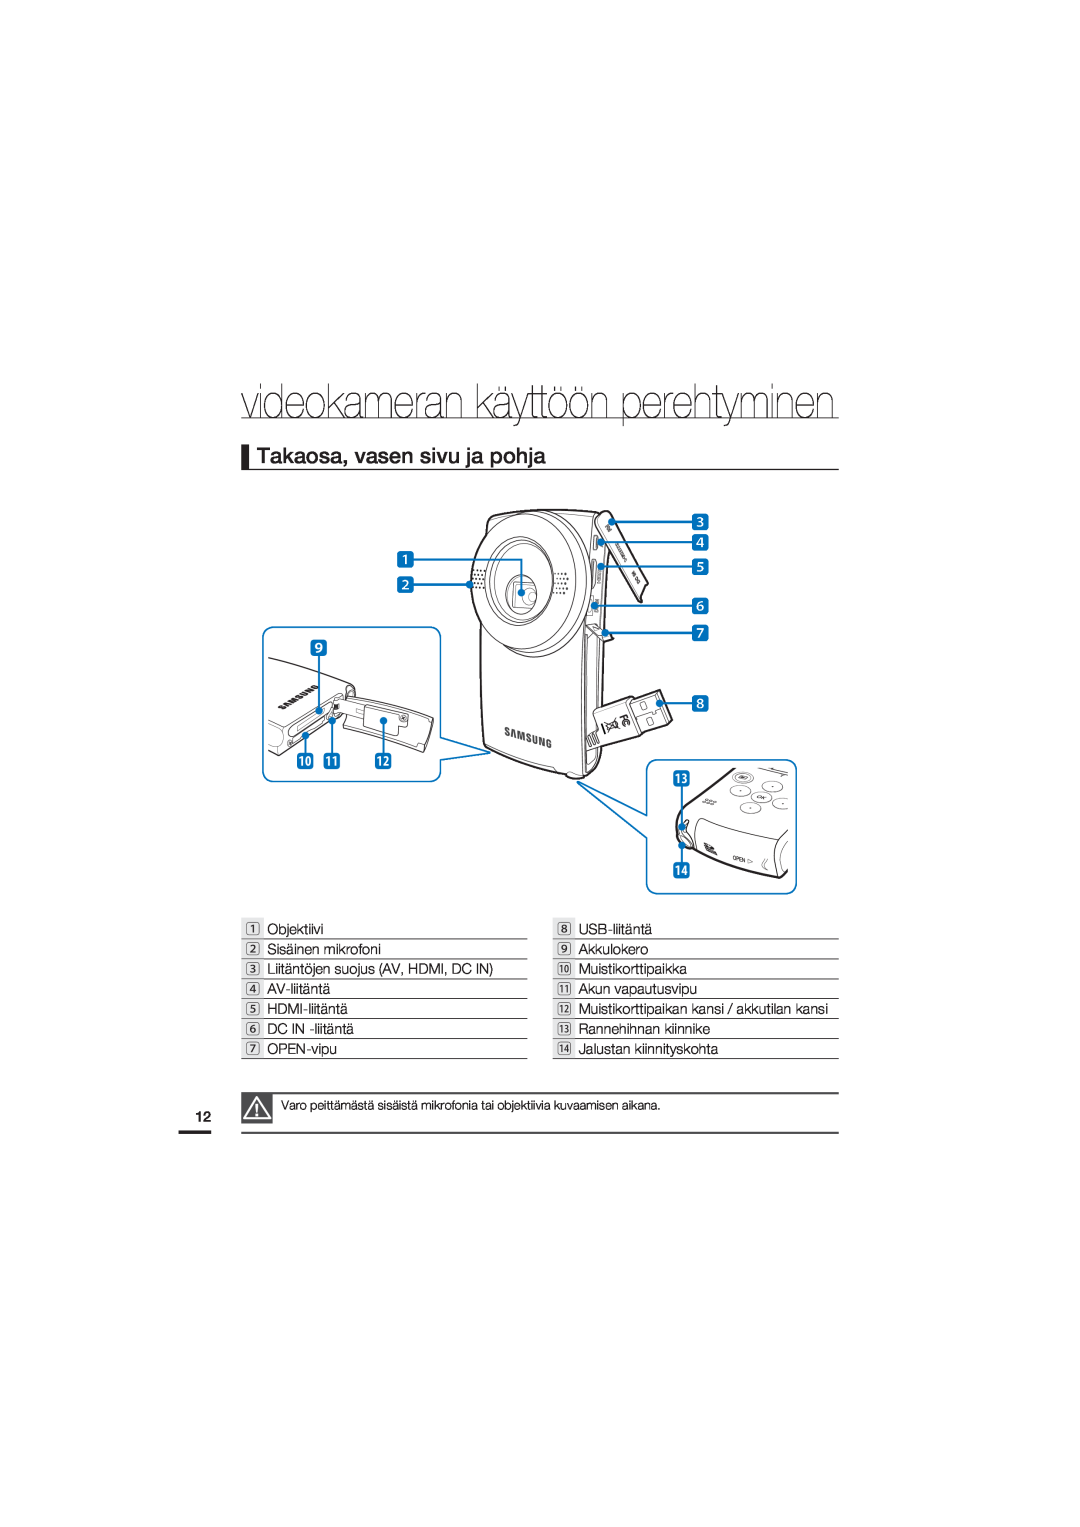 Samsung HMX-U20BP/EDC manual Takaosa, vasen sivu ja pohja, videokameran käyttöön perehtyminen 